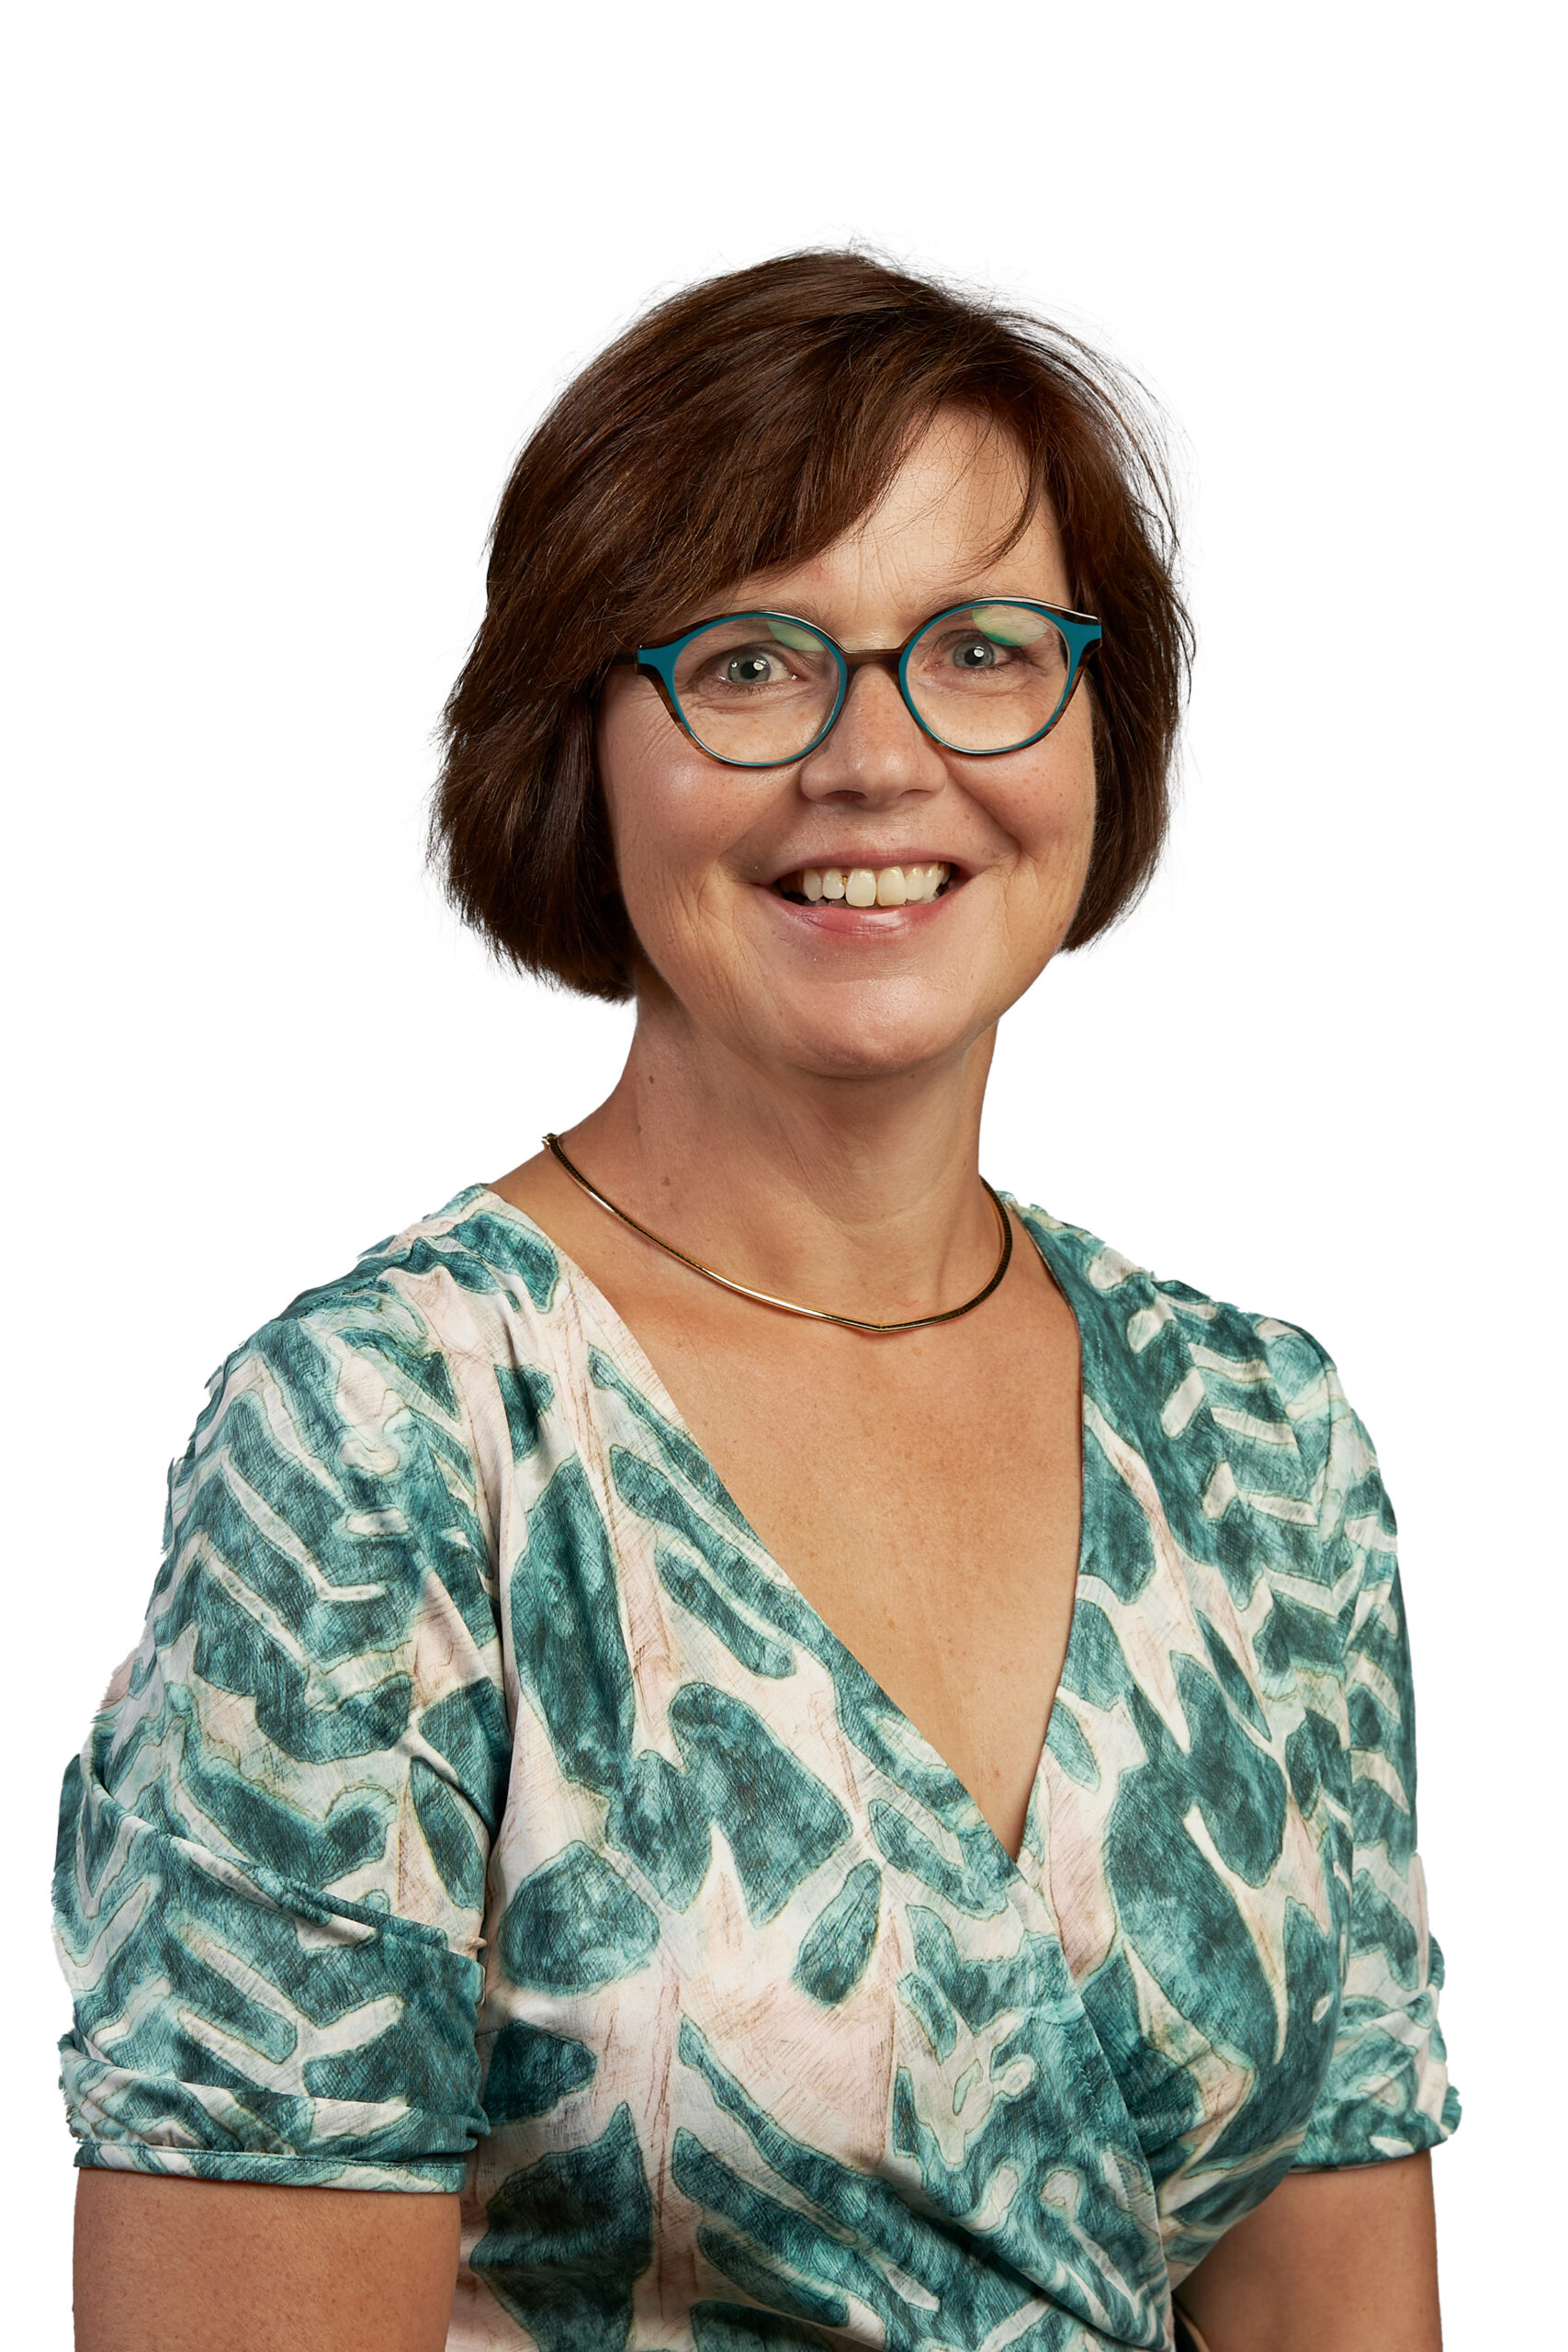 Angela van Berkel